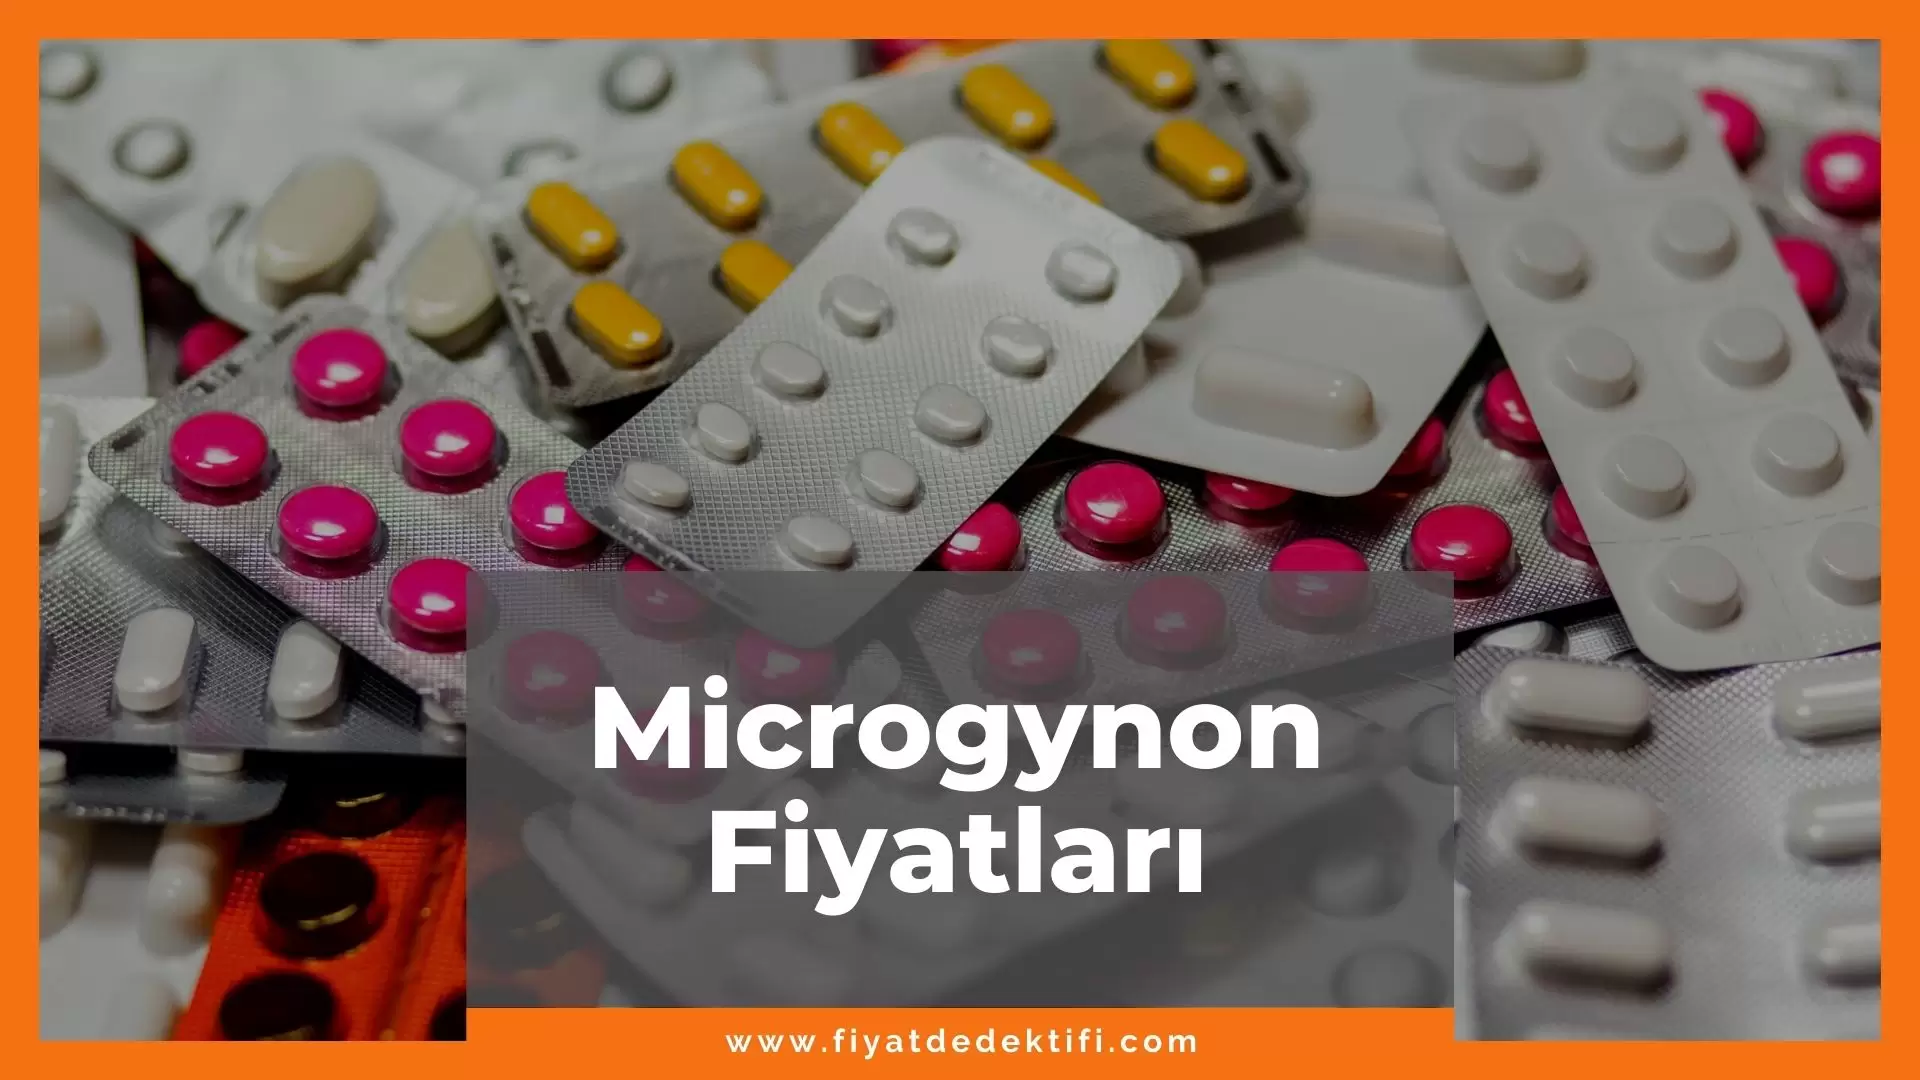 Microgynon Fiyat 2021, Microgynon Fiyatı, microgynon zamlandı mı, microgynon zamlı fiyat ne kadar kaç tl oldu